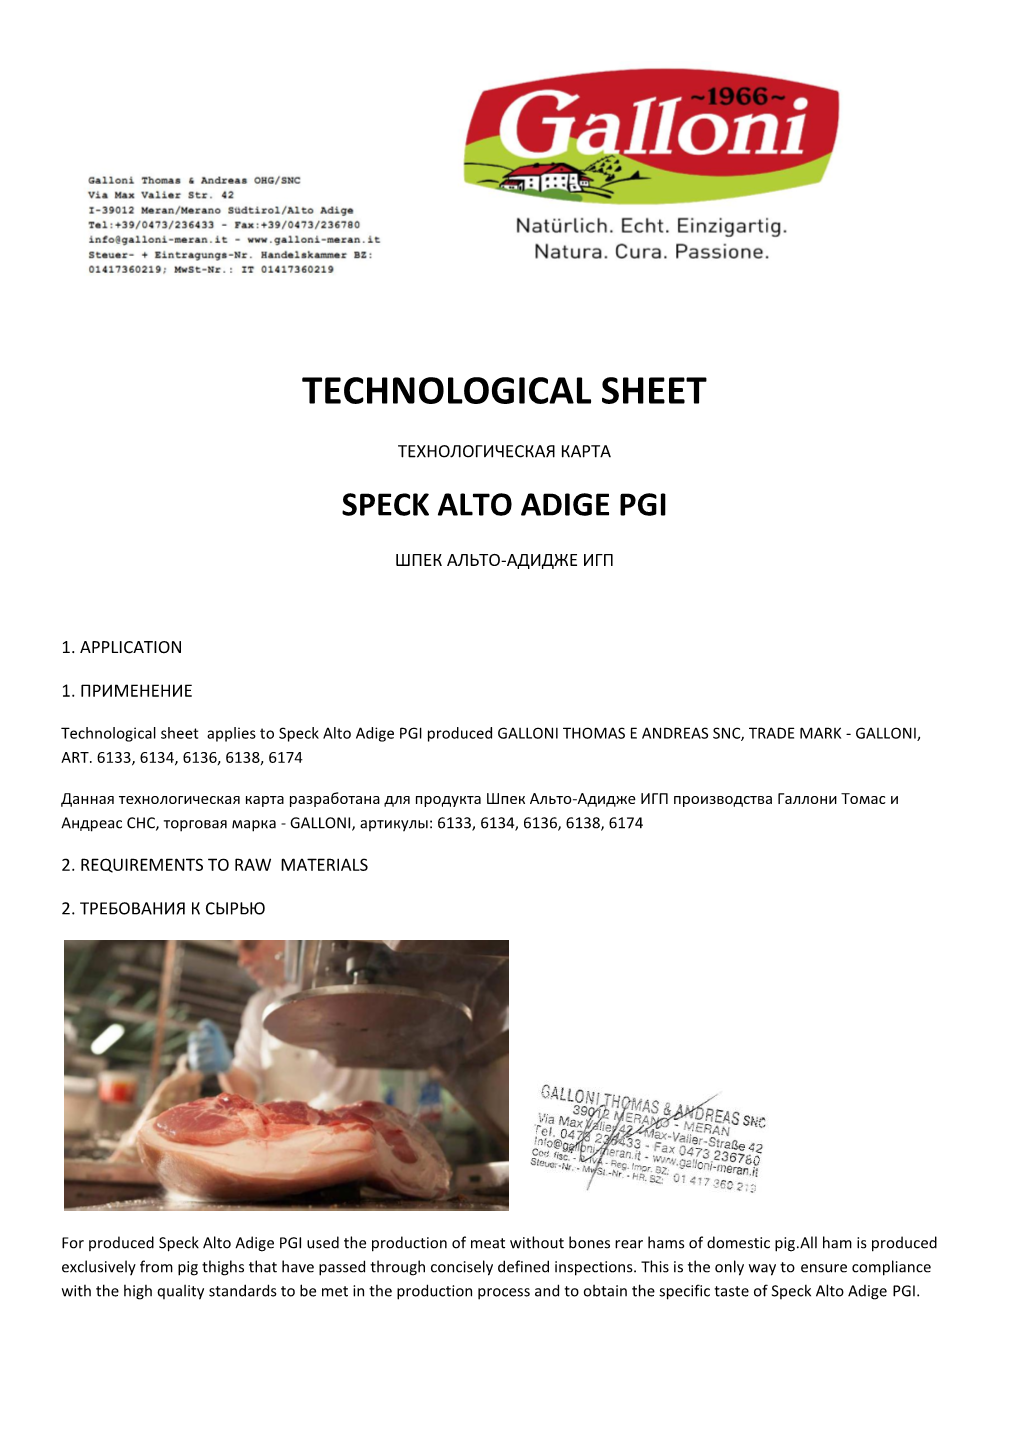 Technological Sheet